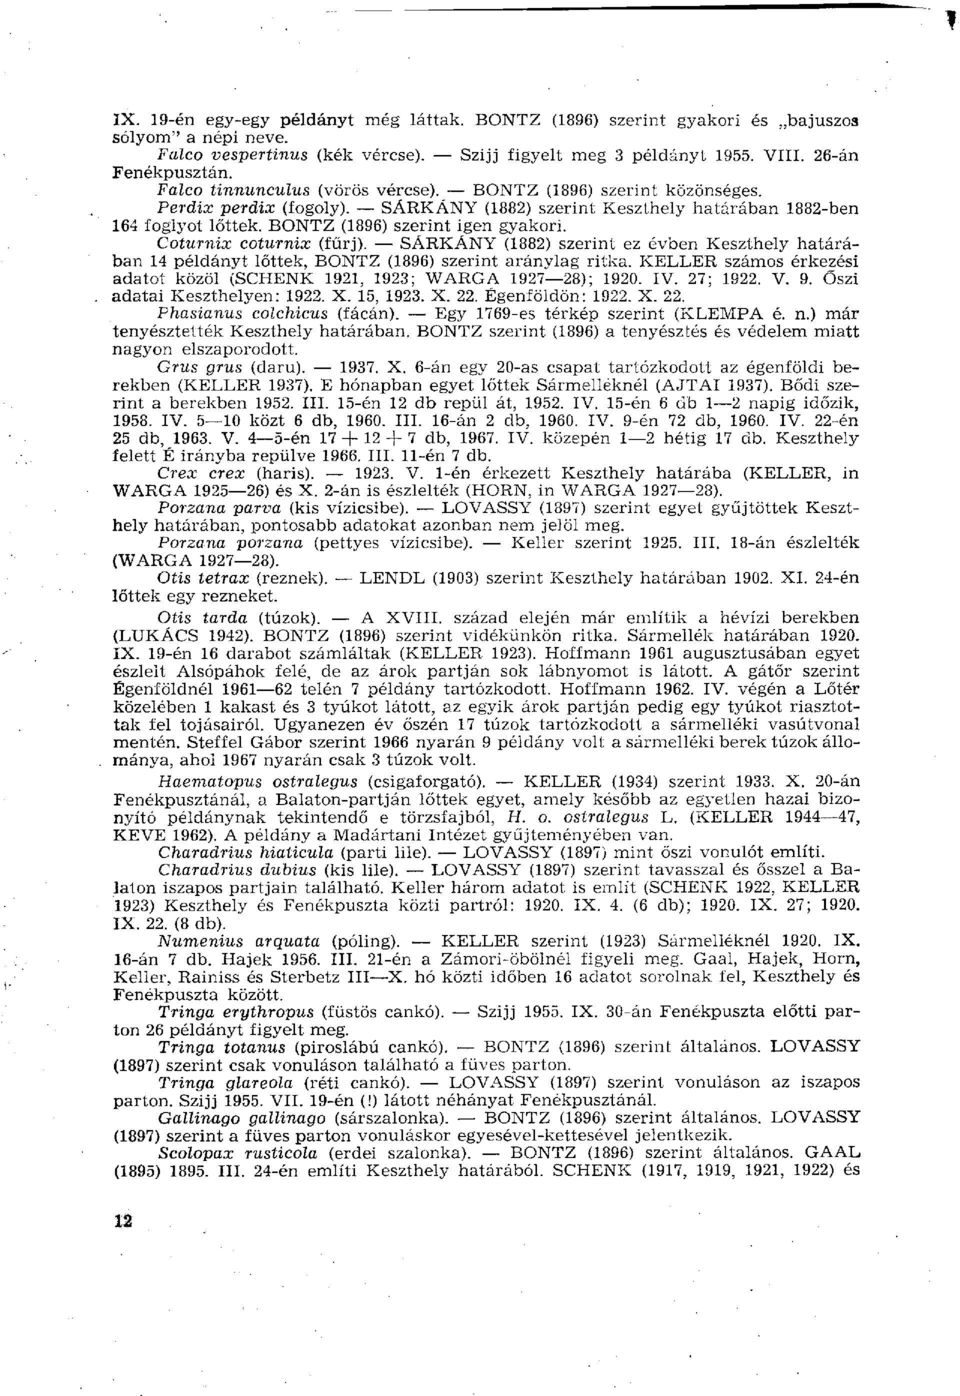 Coturnix coturnix (fűrj). SÁRKÁNY (1882) szerint ez évben Keszthely határában 14 példányt lőttek, BONTZ (1896) szerint aránylag ritka.